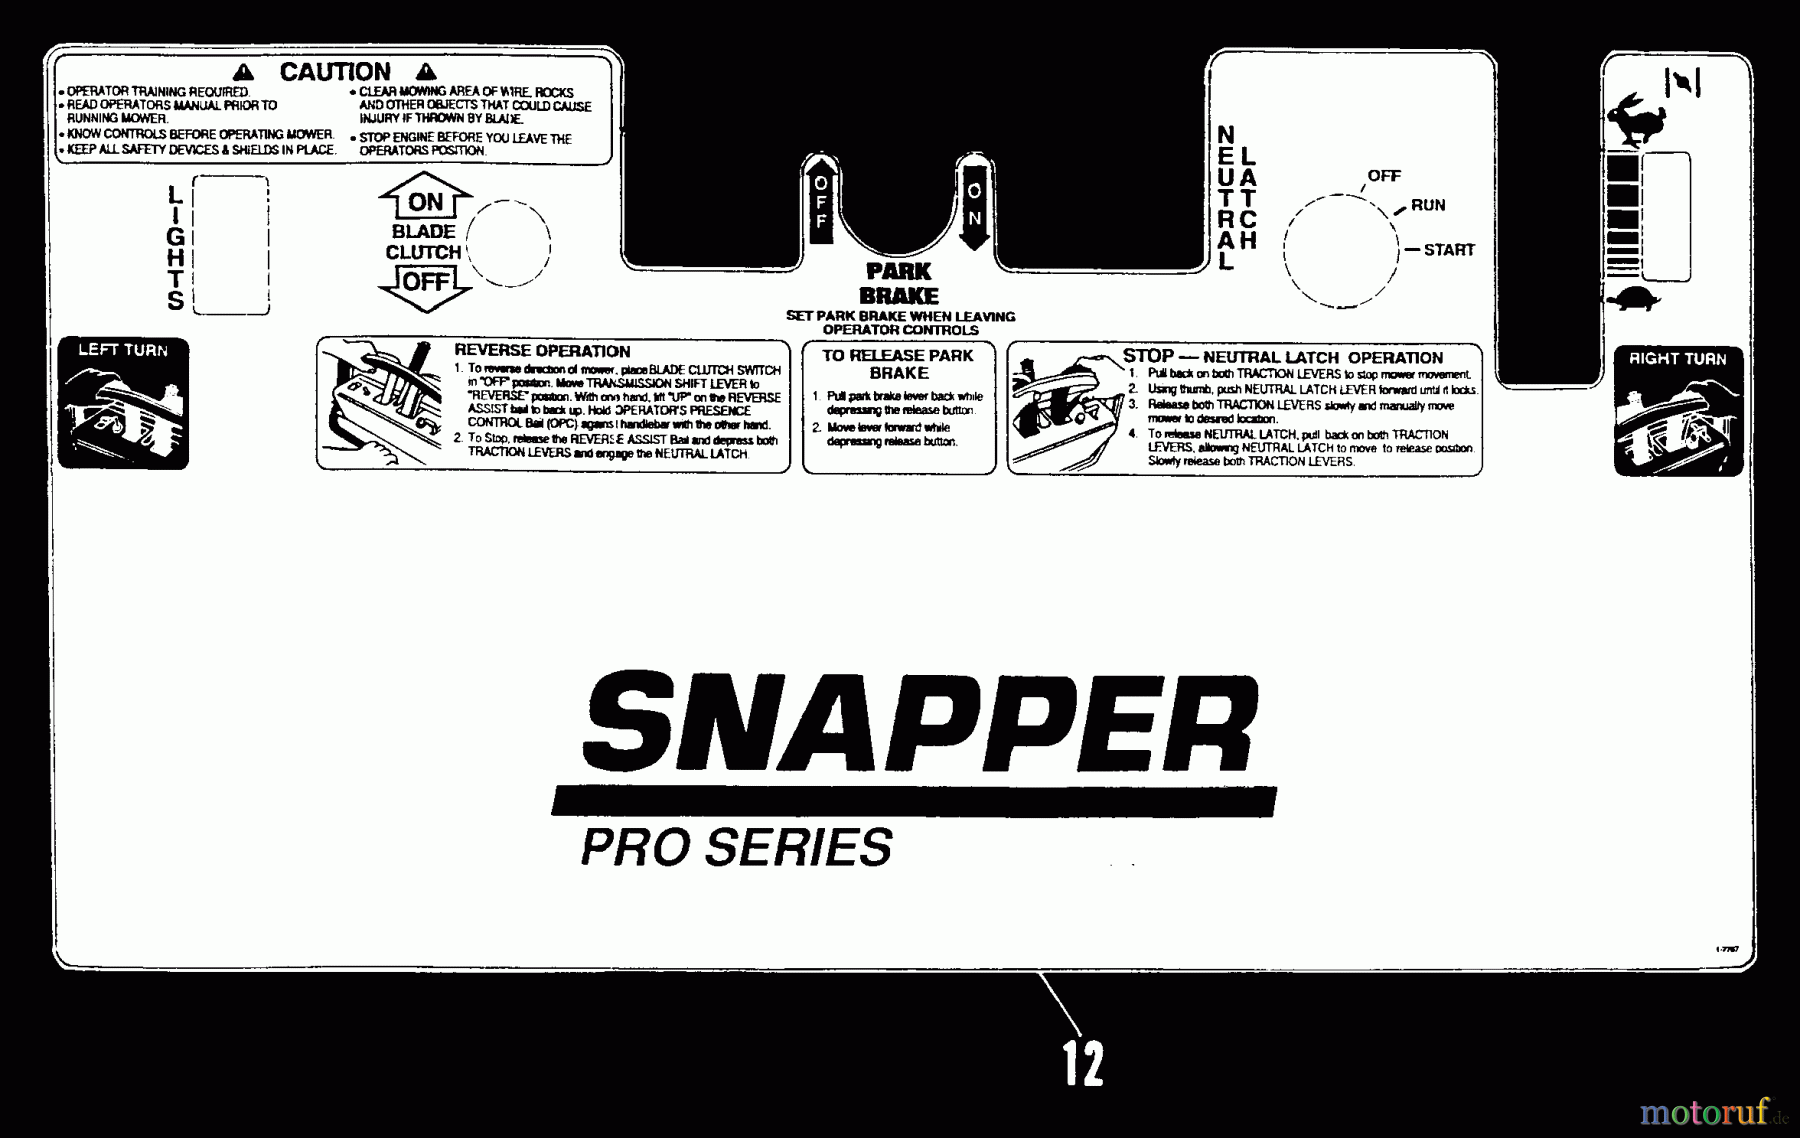  Snapper Rasenmäher für Großflächen PPU140KVE - Snapper Wide-Area Walk-Behind Mower, 14 HP, Mid-Size Gear Drive, Series 0 Decal Kit (Part 2)